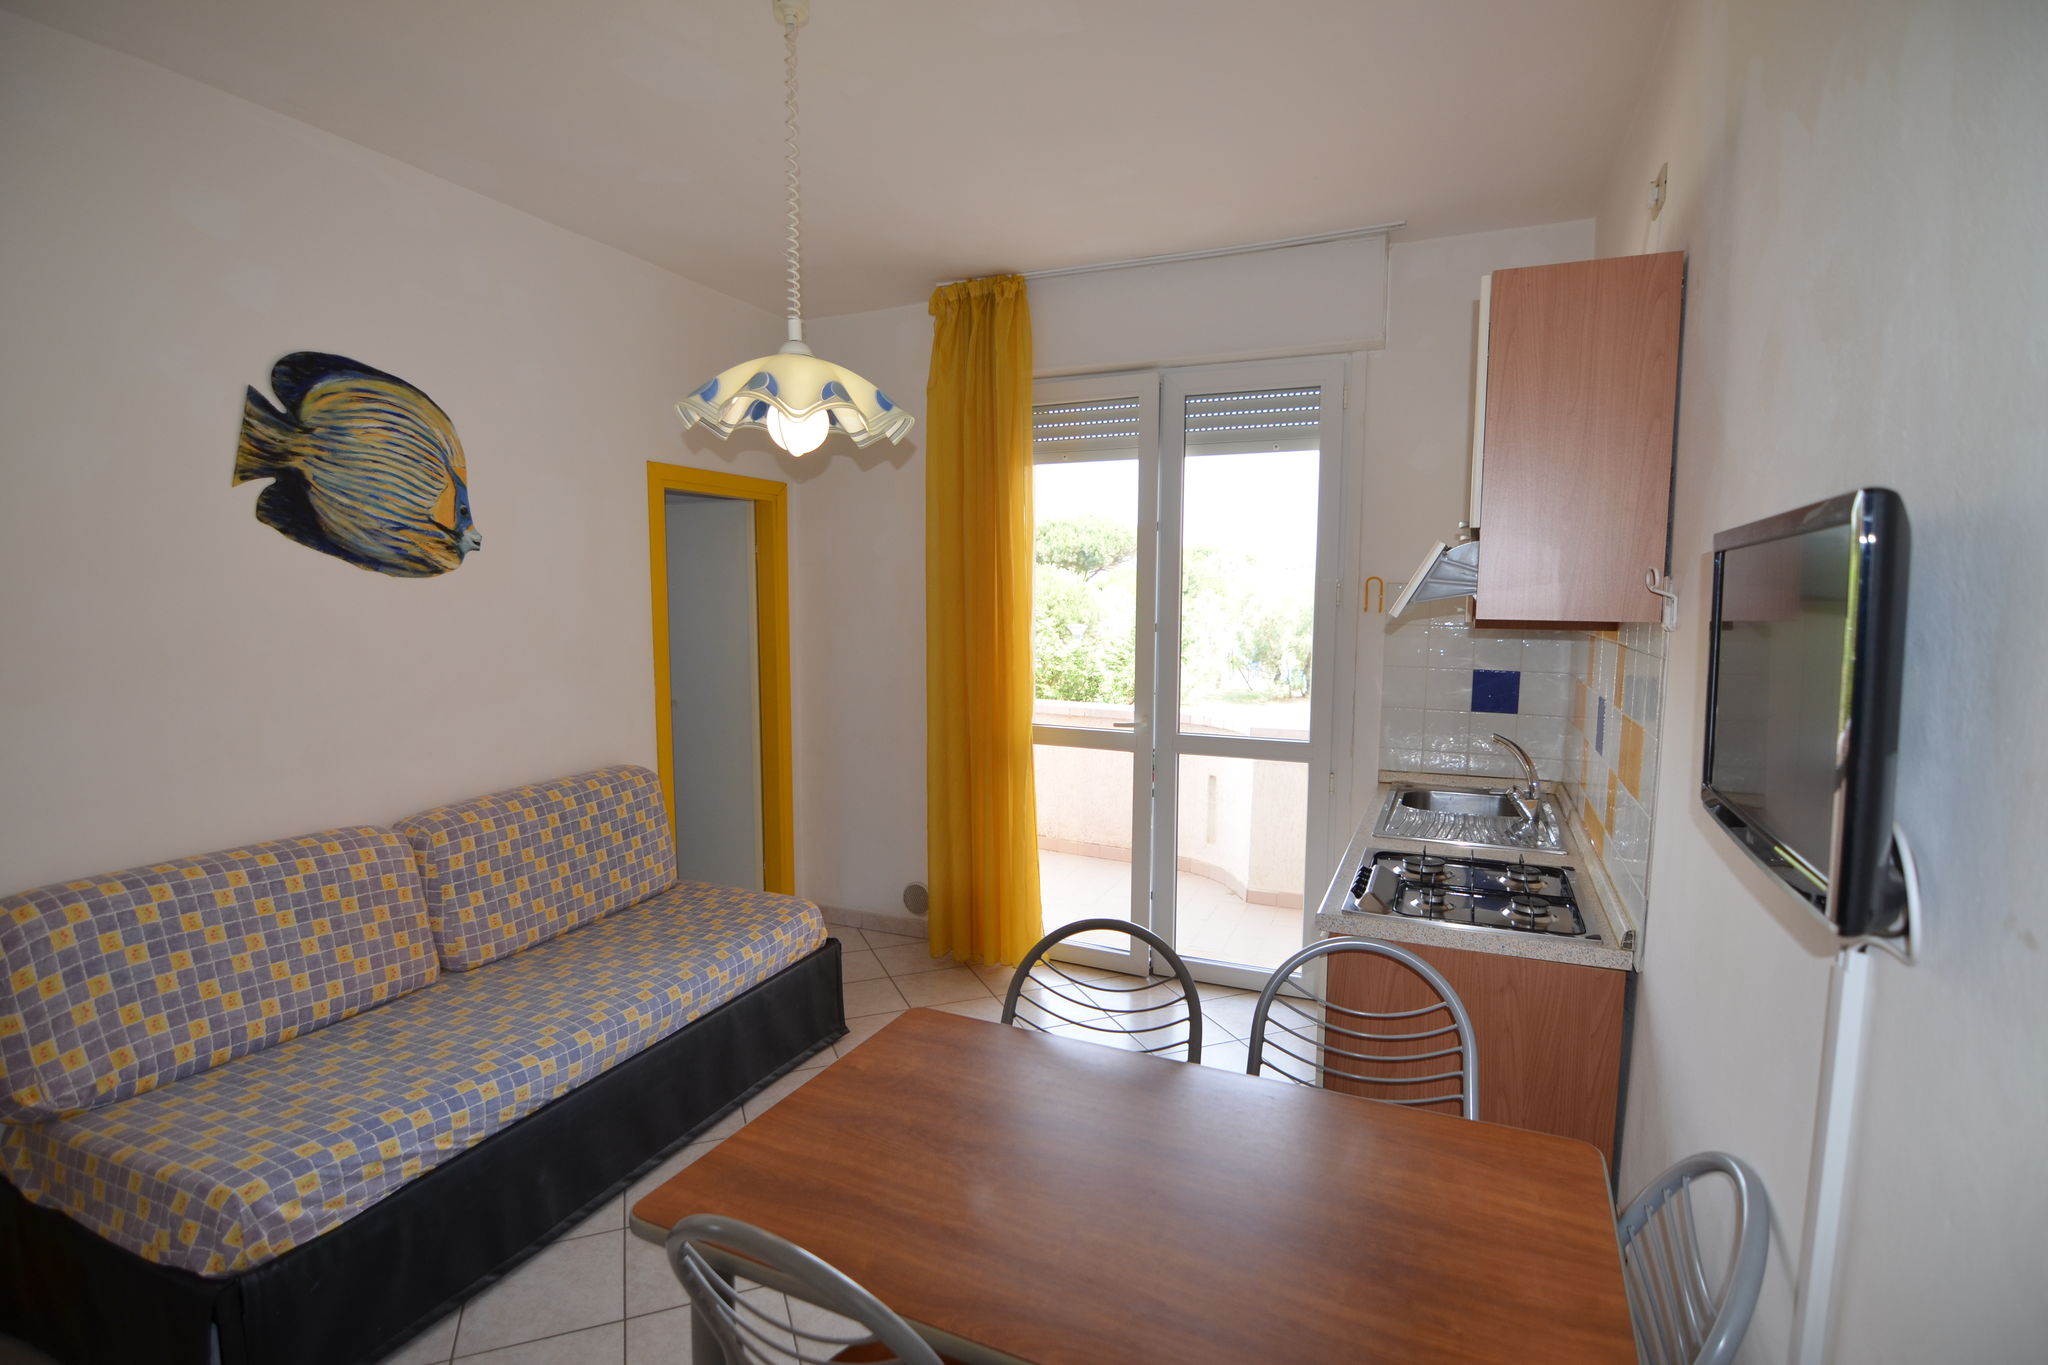 Comfortable apartment near the sea in Lido degli Estensi